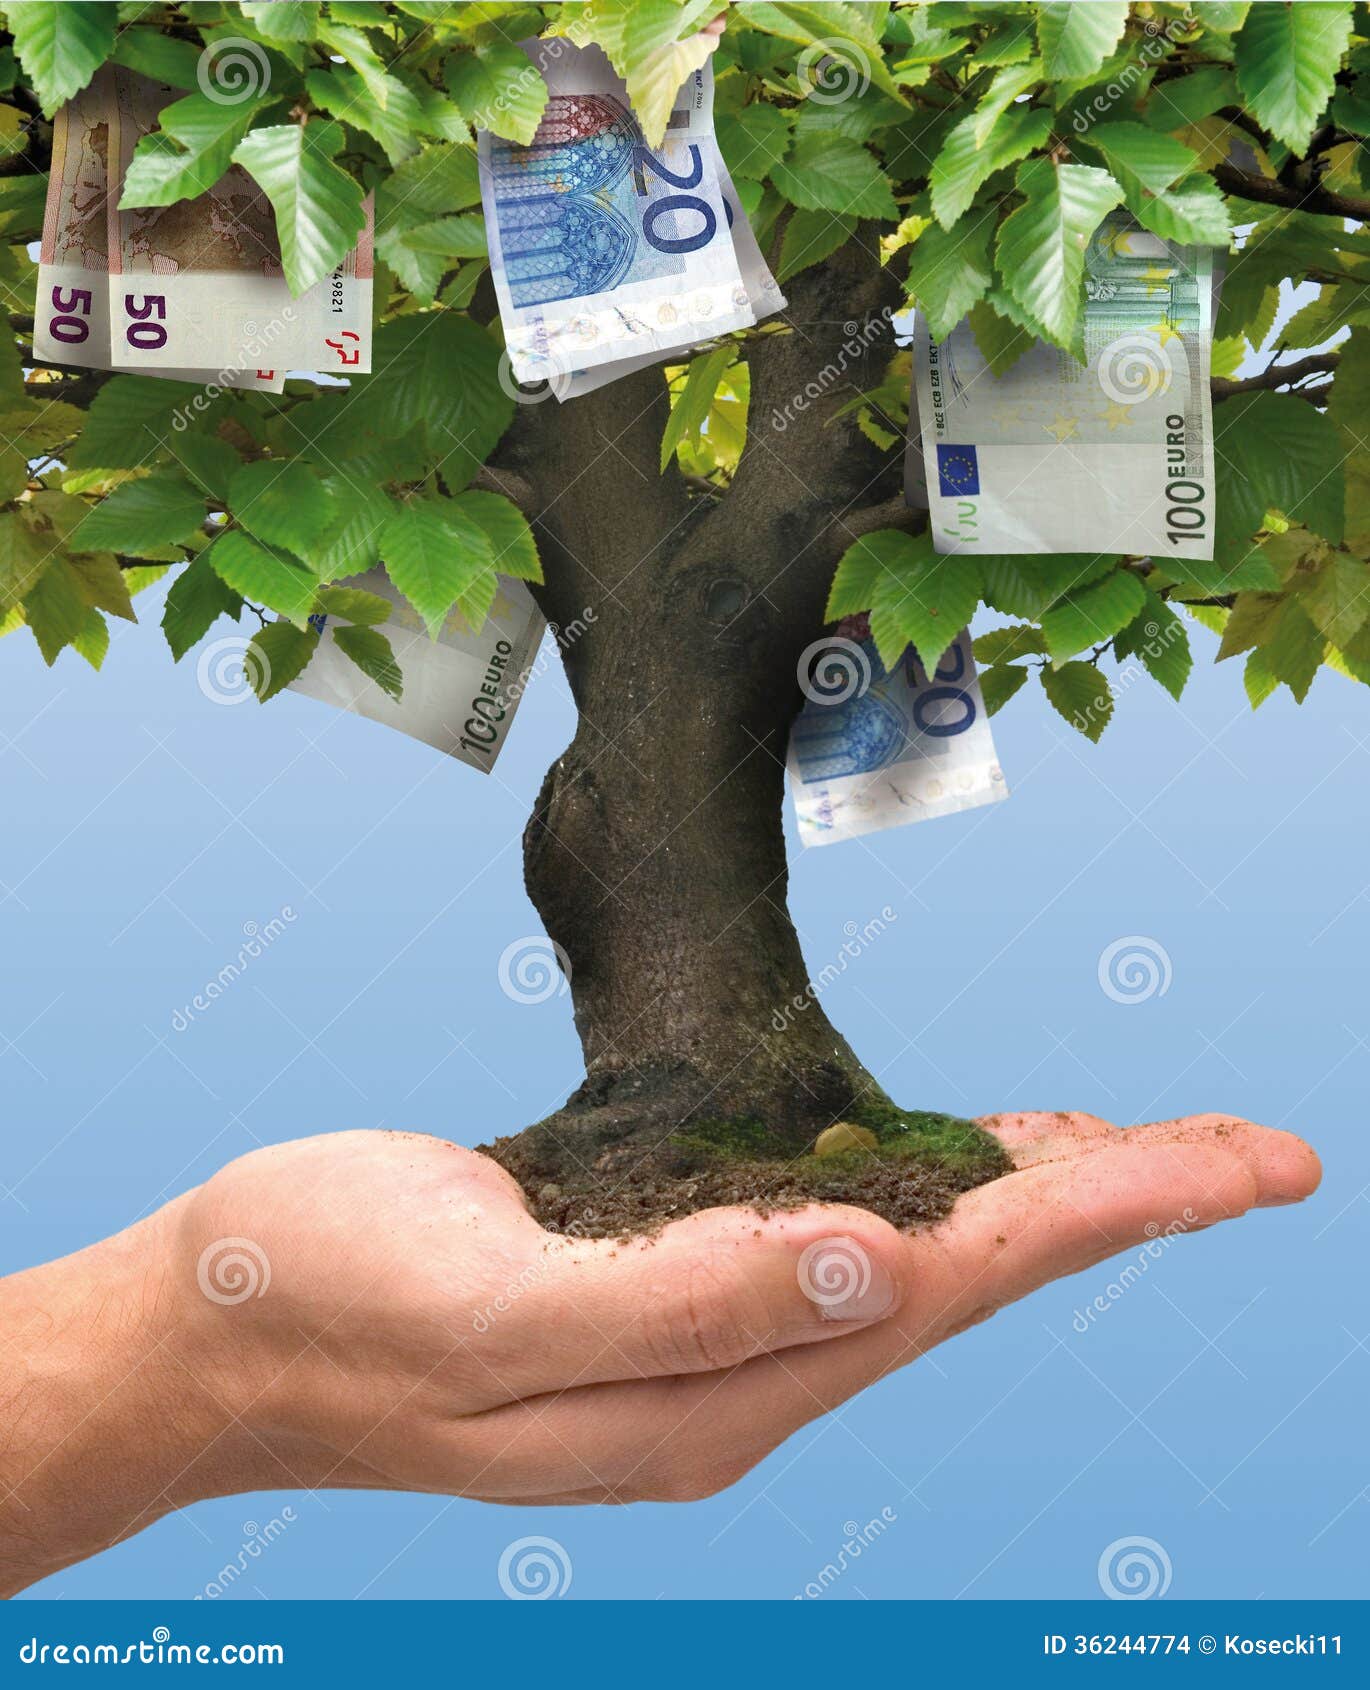 money tree - euro